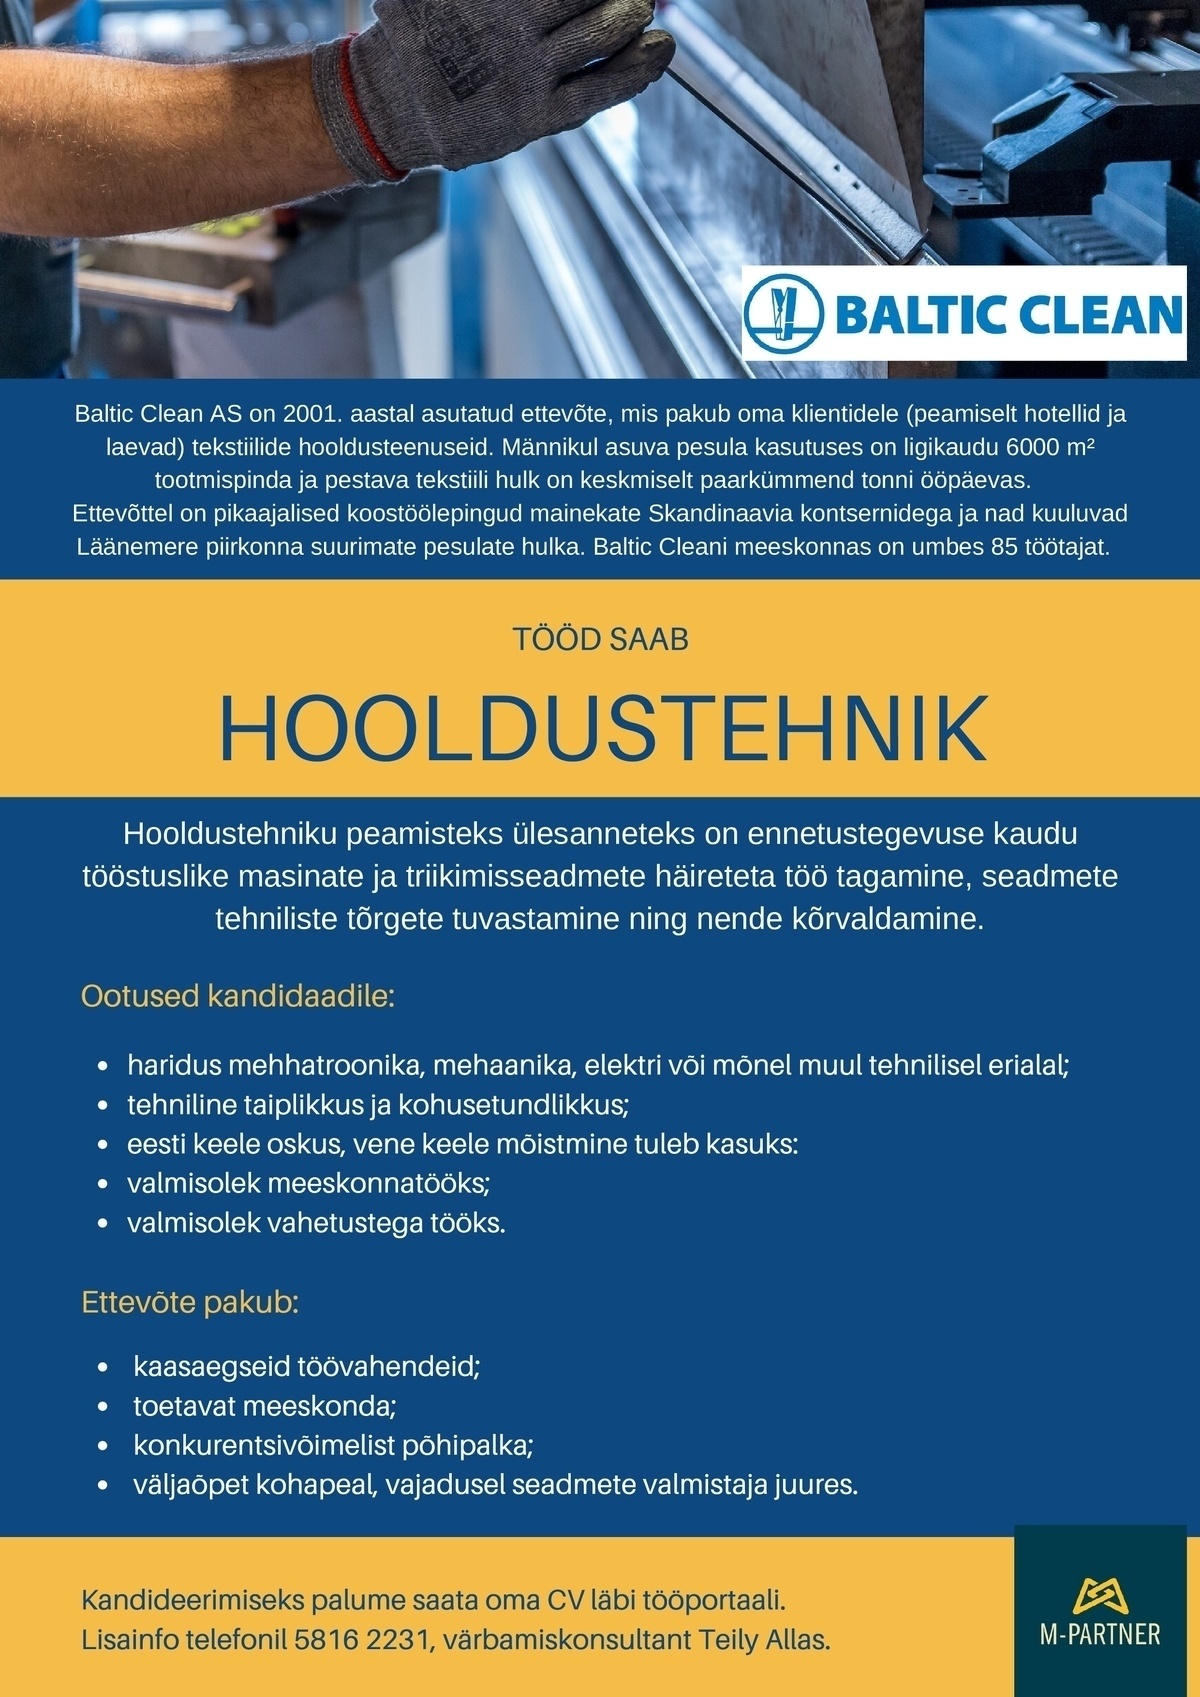 M-Partner HR OÜ Hooldustehnik (Baltic Clean AS)